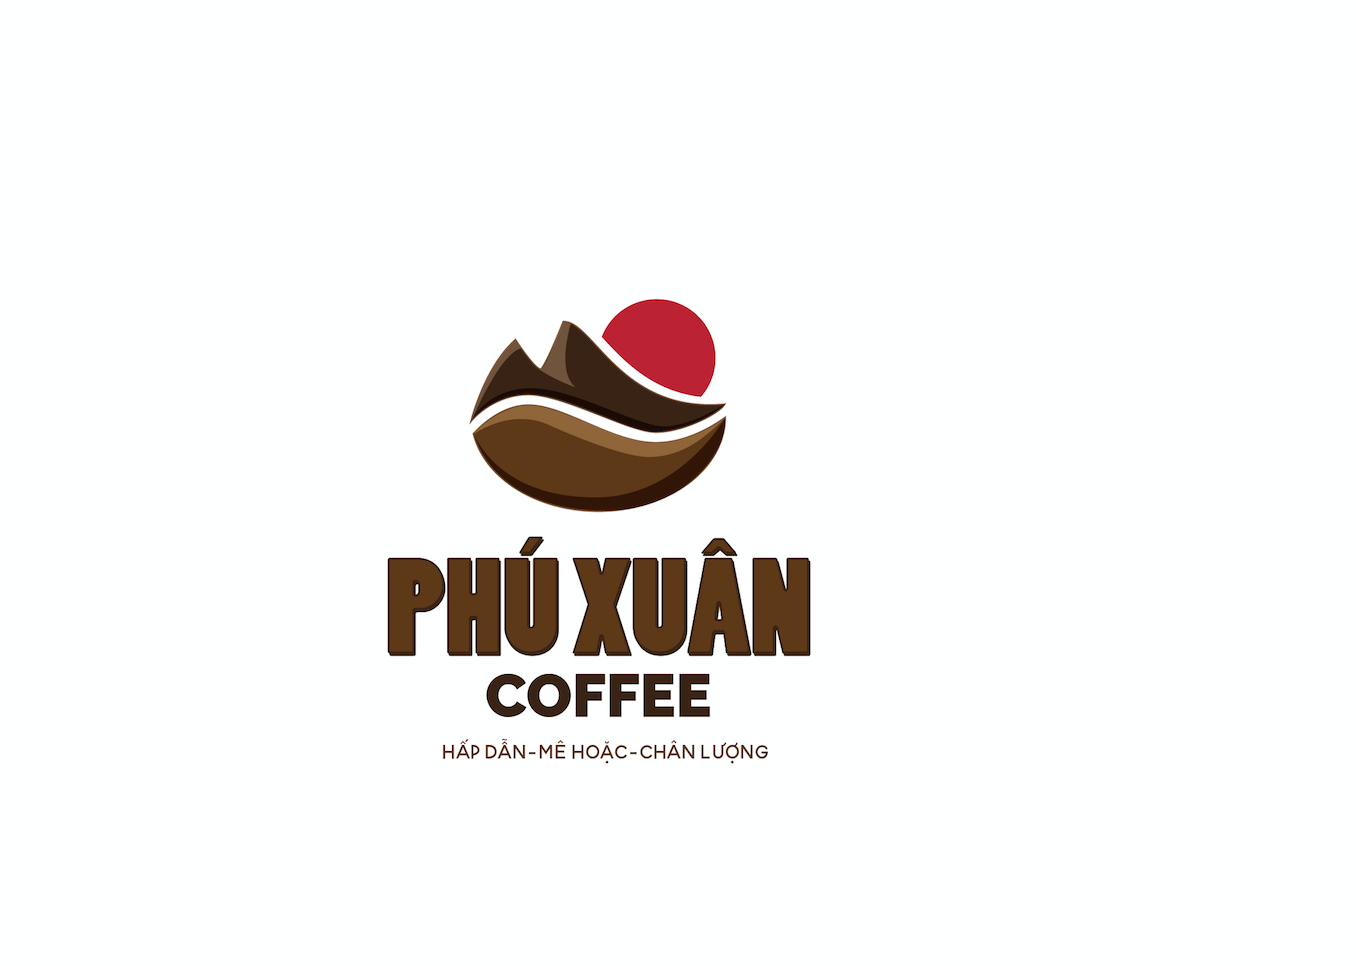 Phú Xuân Coffee